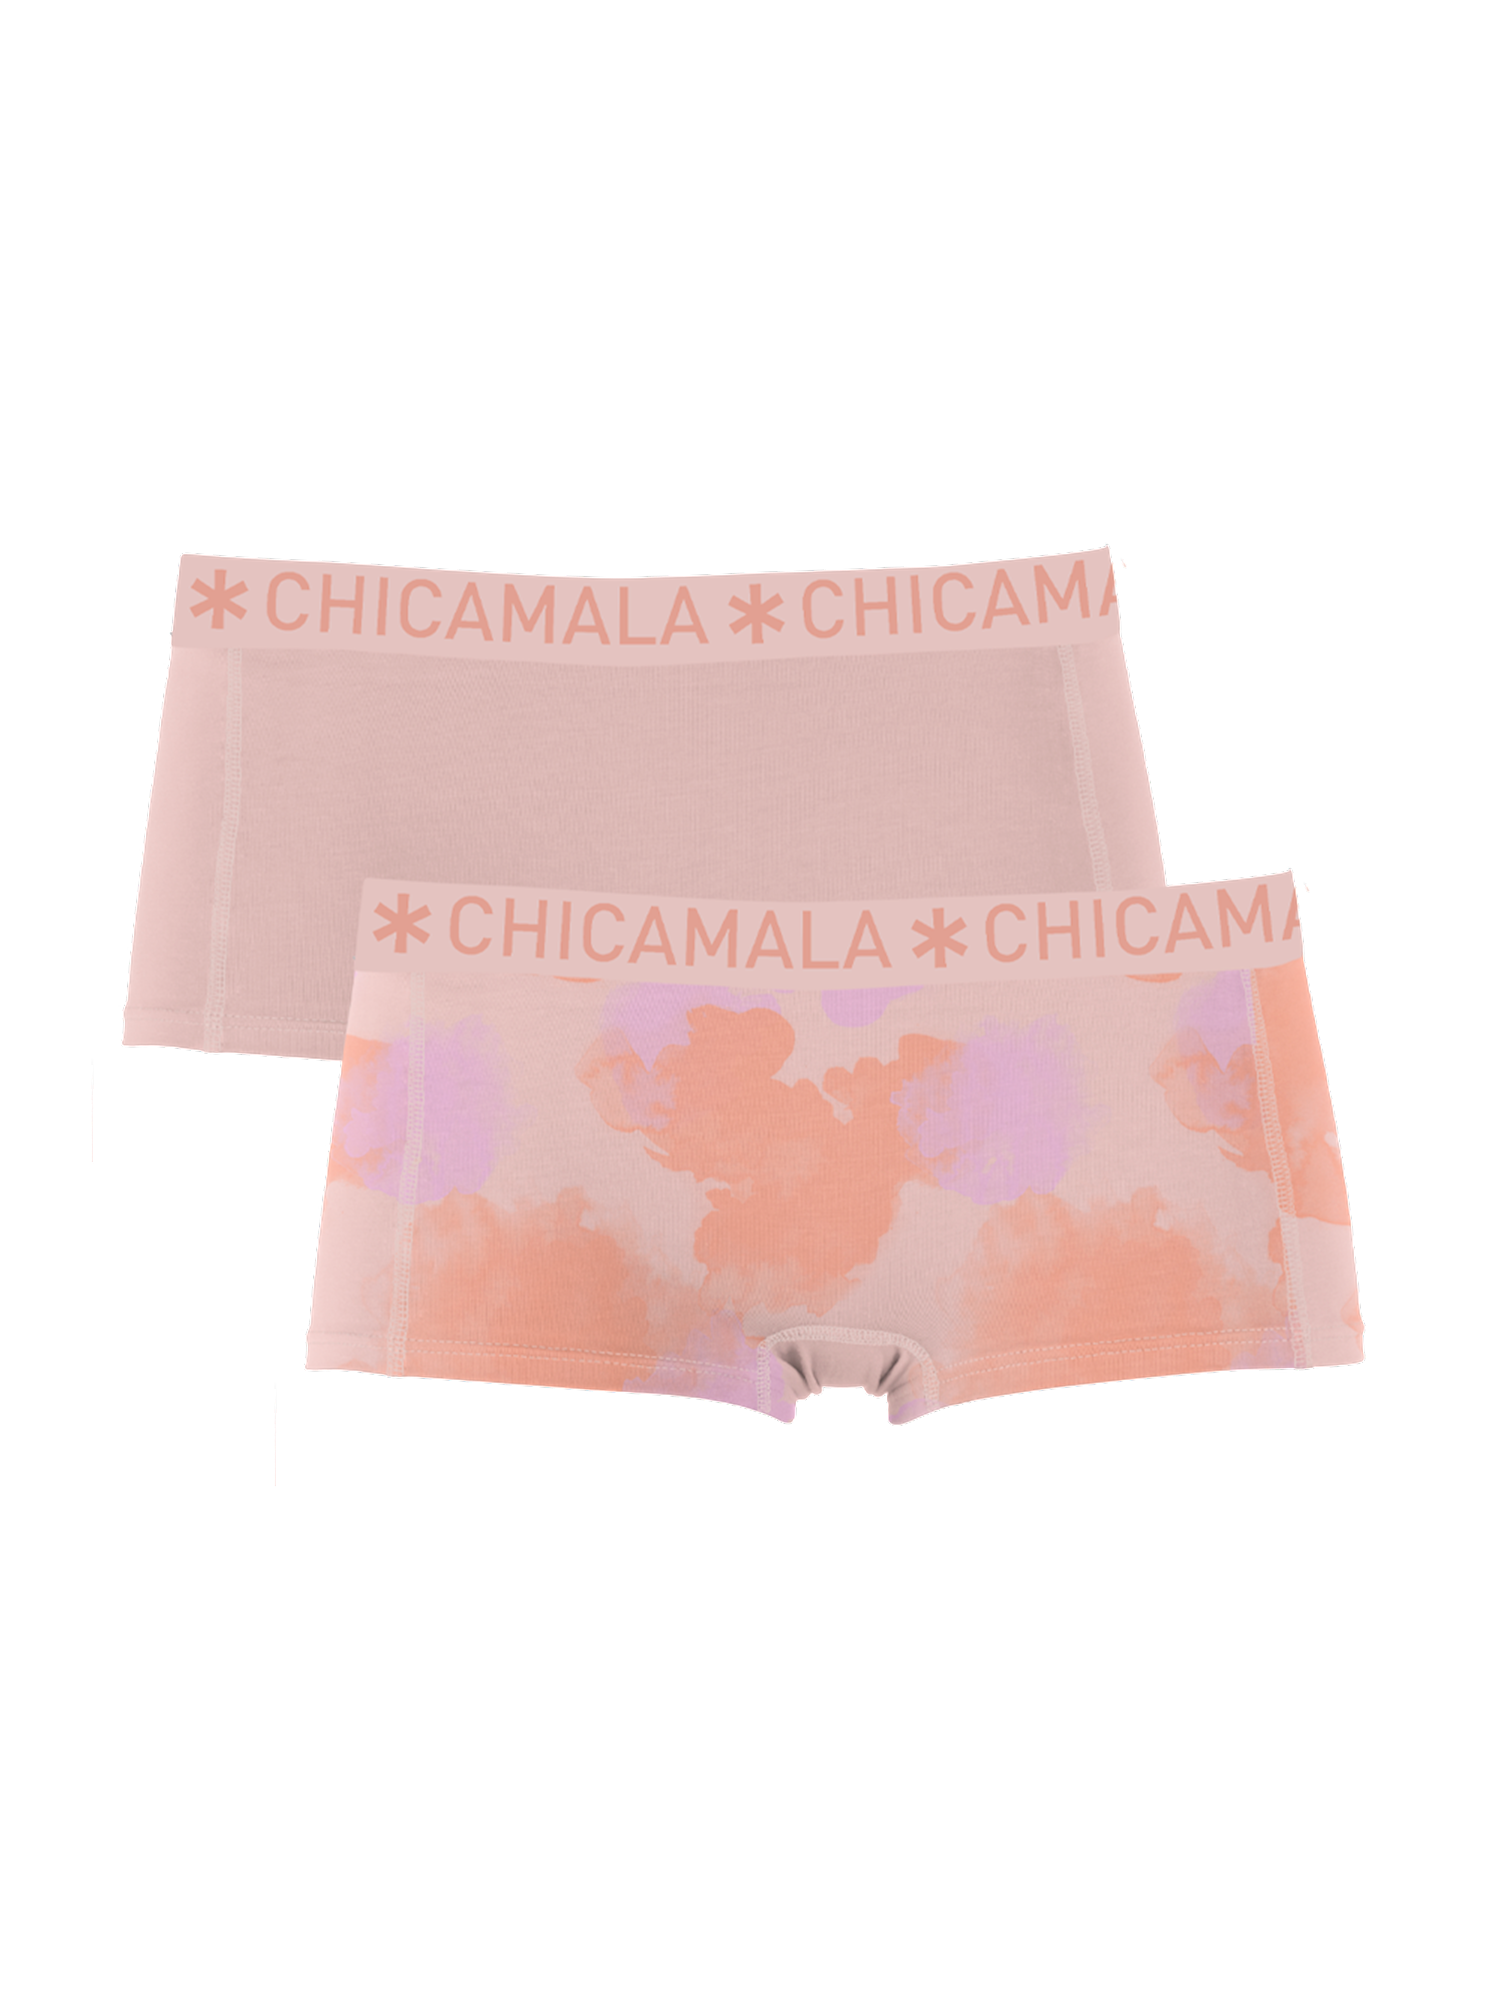 Meisjes Girls 2-pack short Pastelc  van Muchachomalo in de kleur Print/Pink in maat 176.